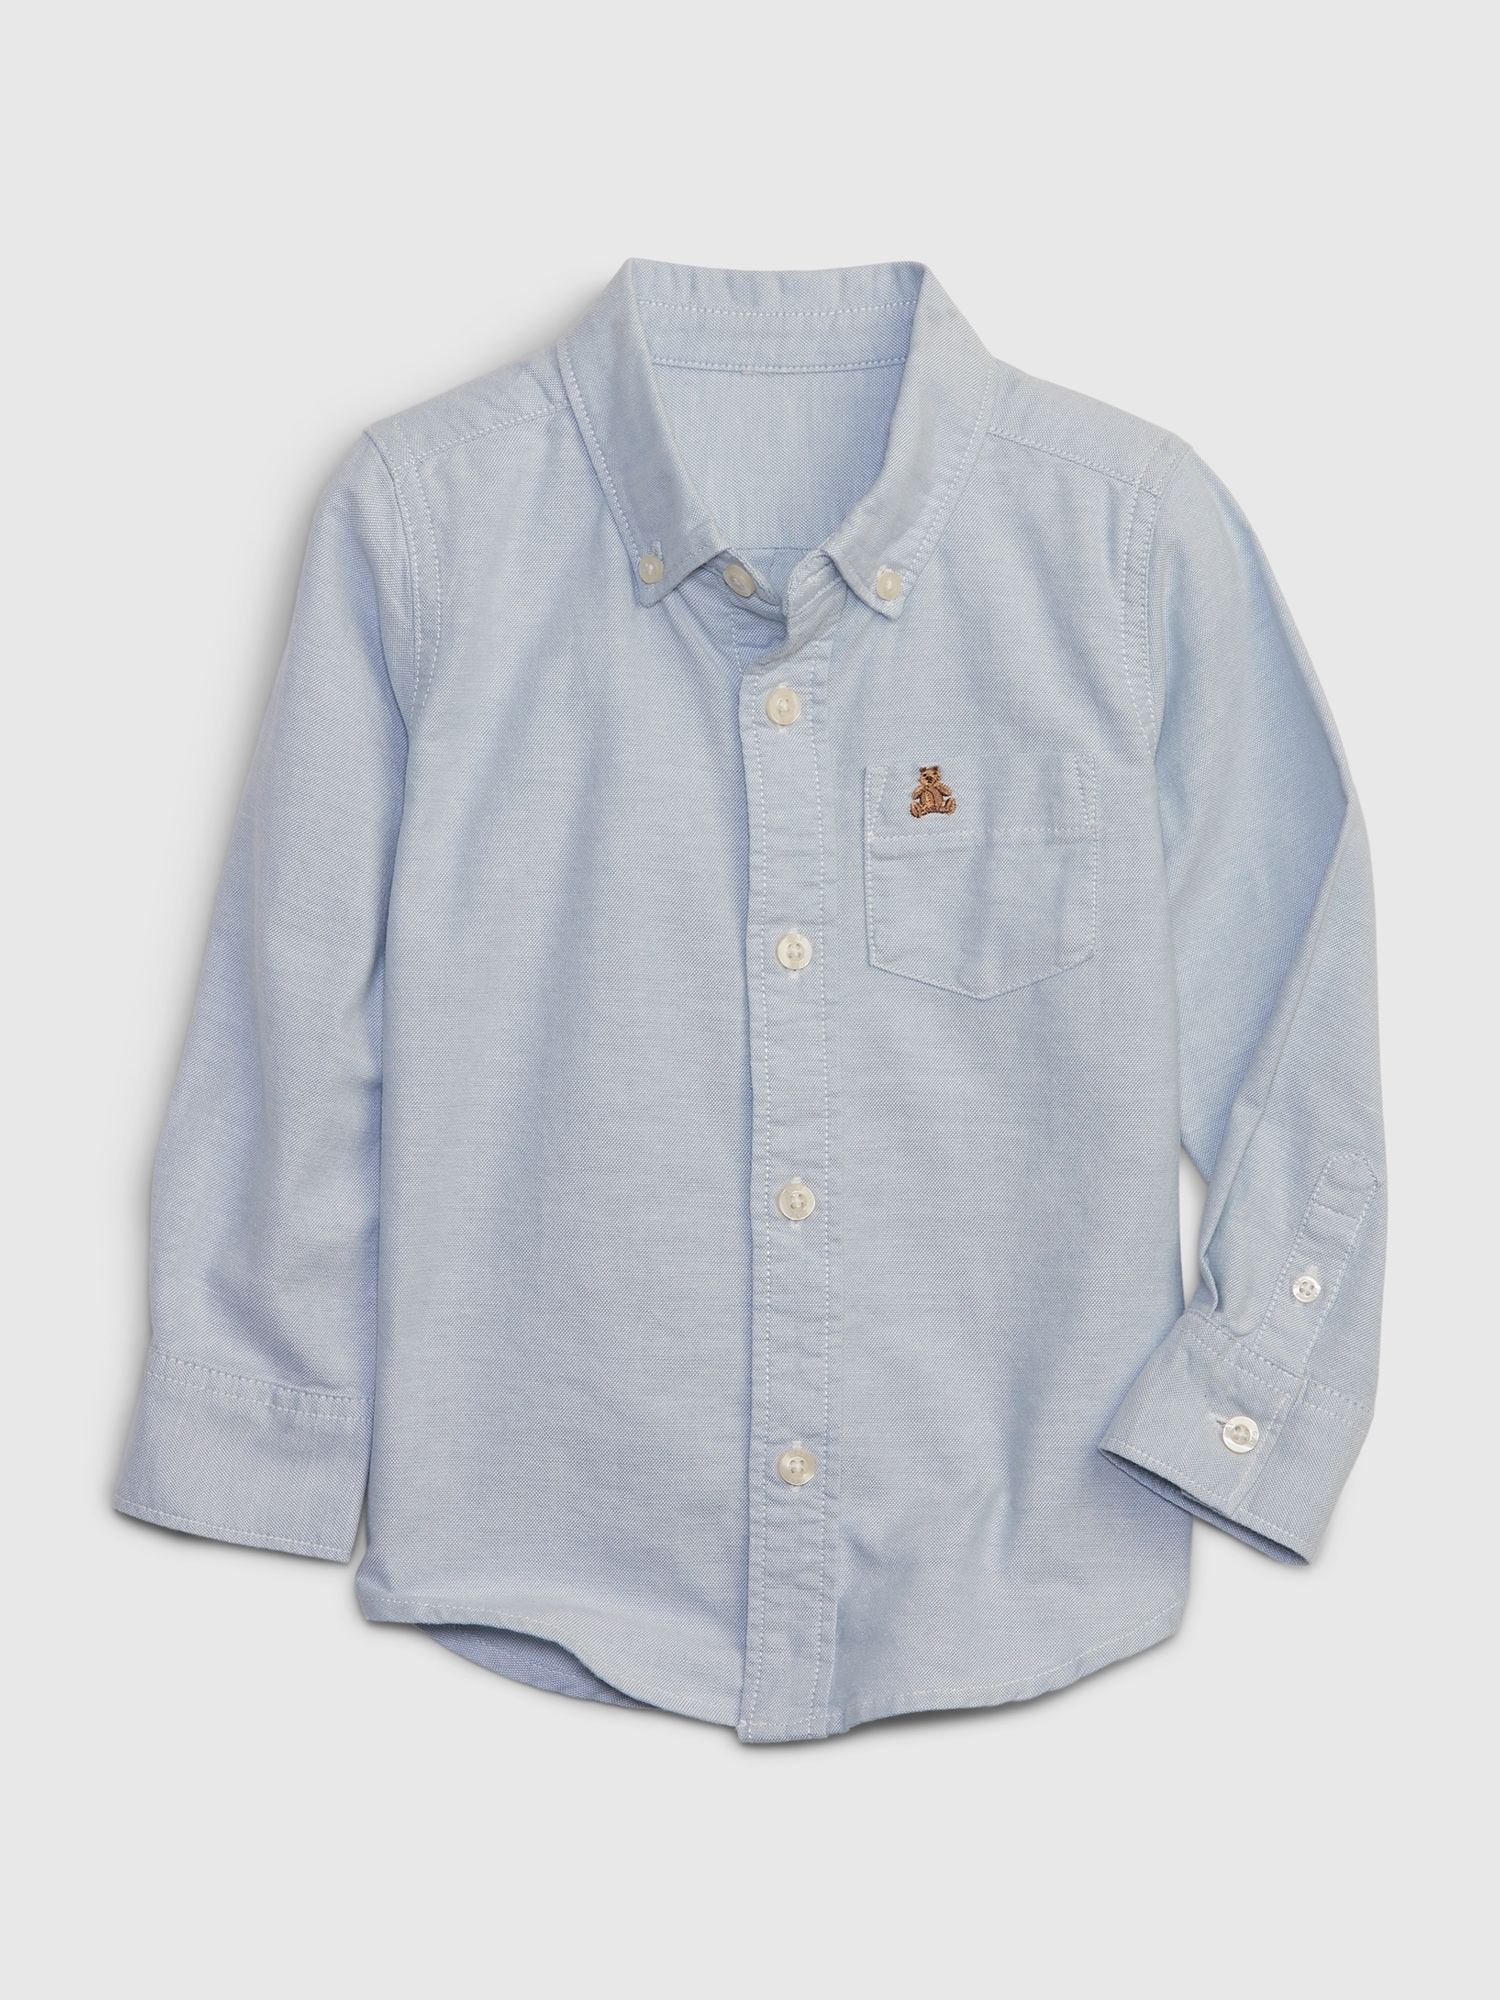 Toddler Oxford Shirt | Gap